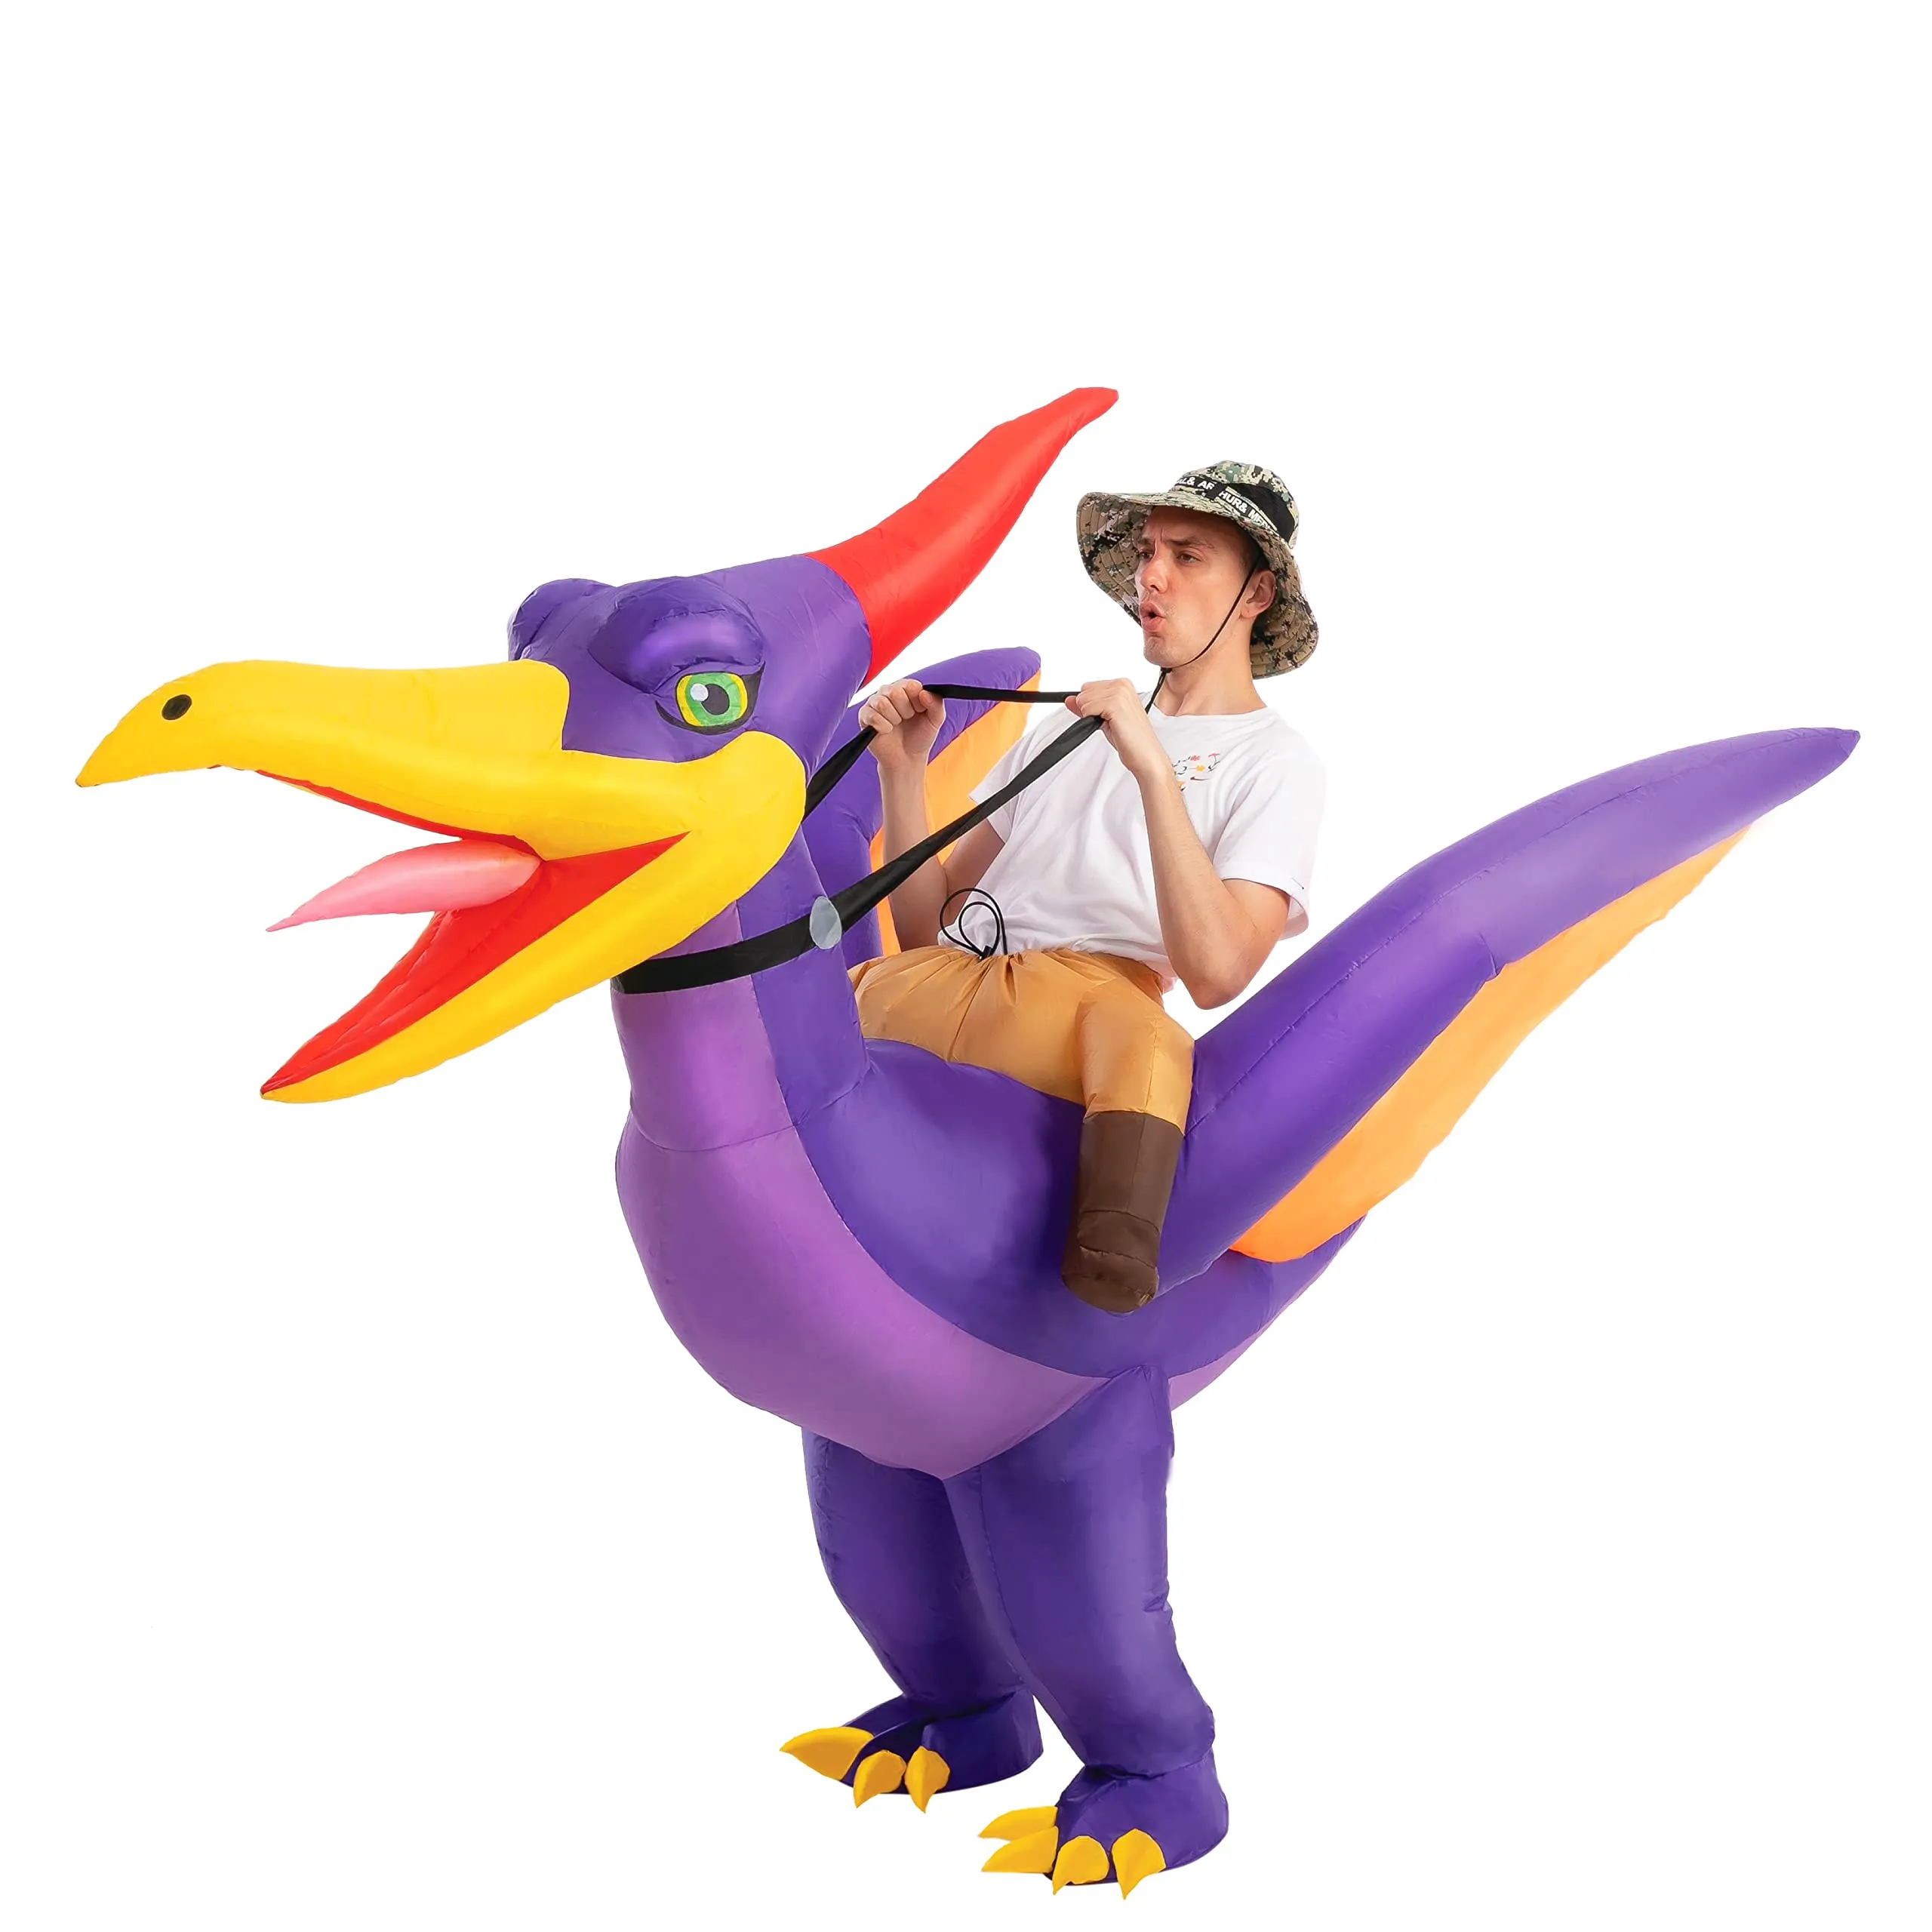 Adult inflatable dinosaur costume